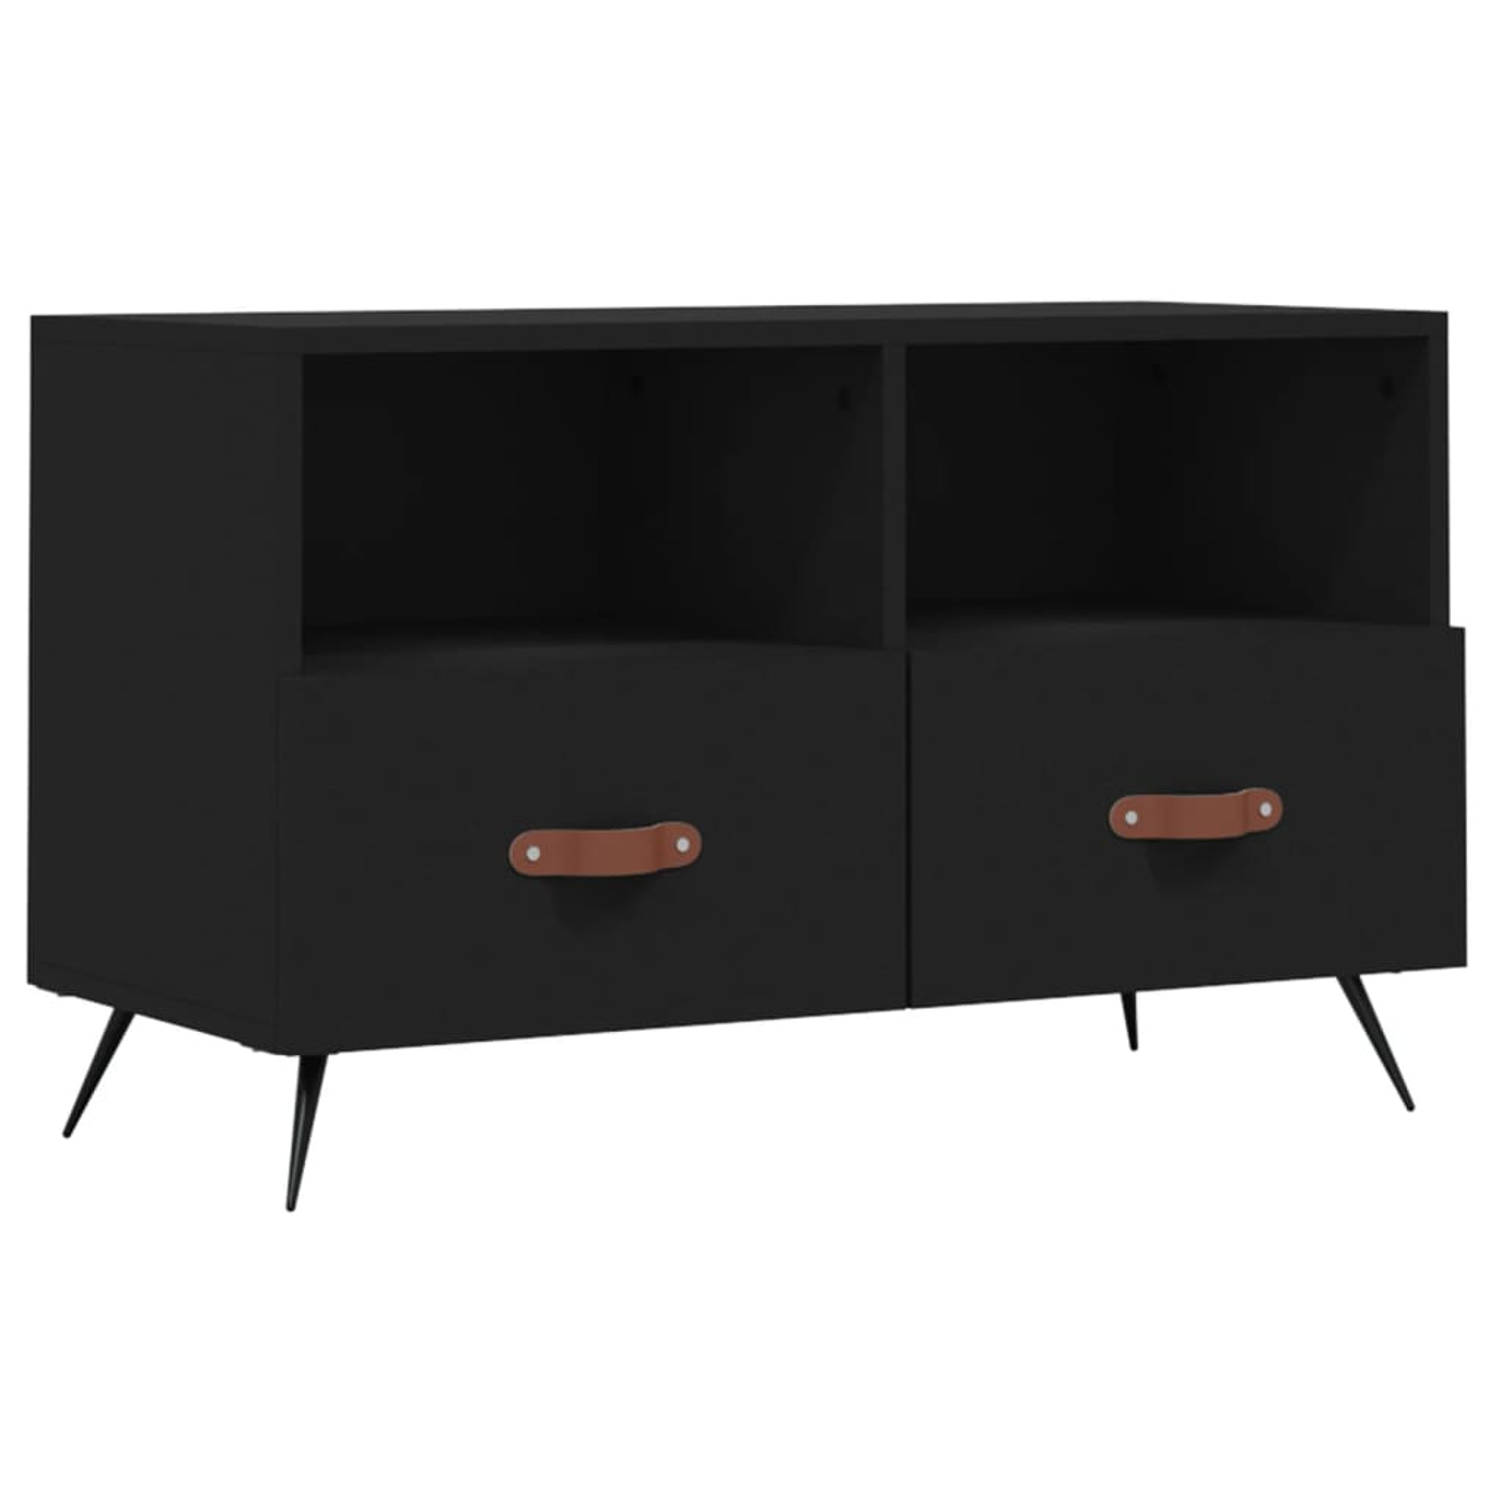 The Living Store tv-meubel - zwart - 80 x 36 x 50 cm - Voldoende opbergruimte